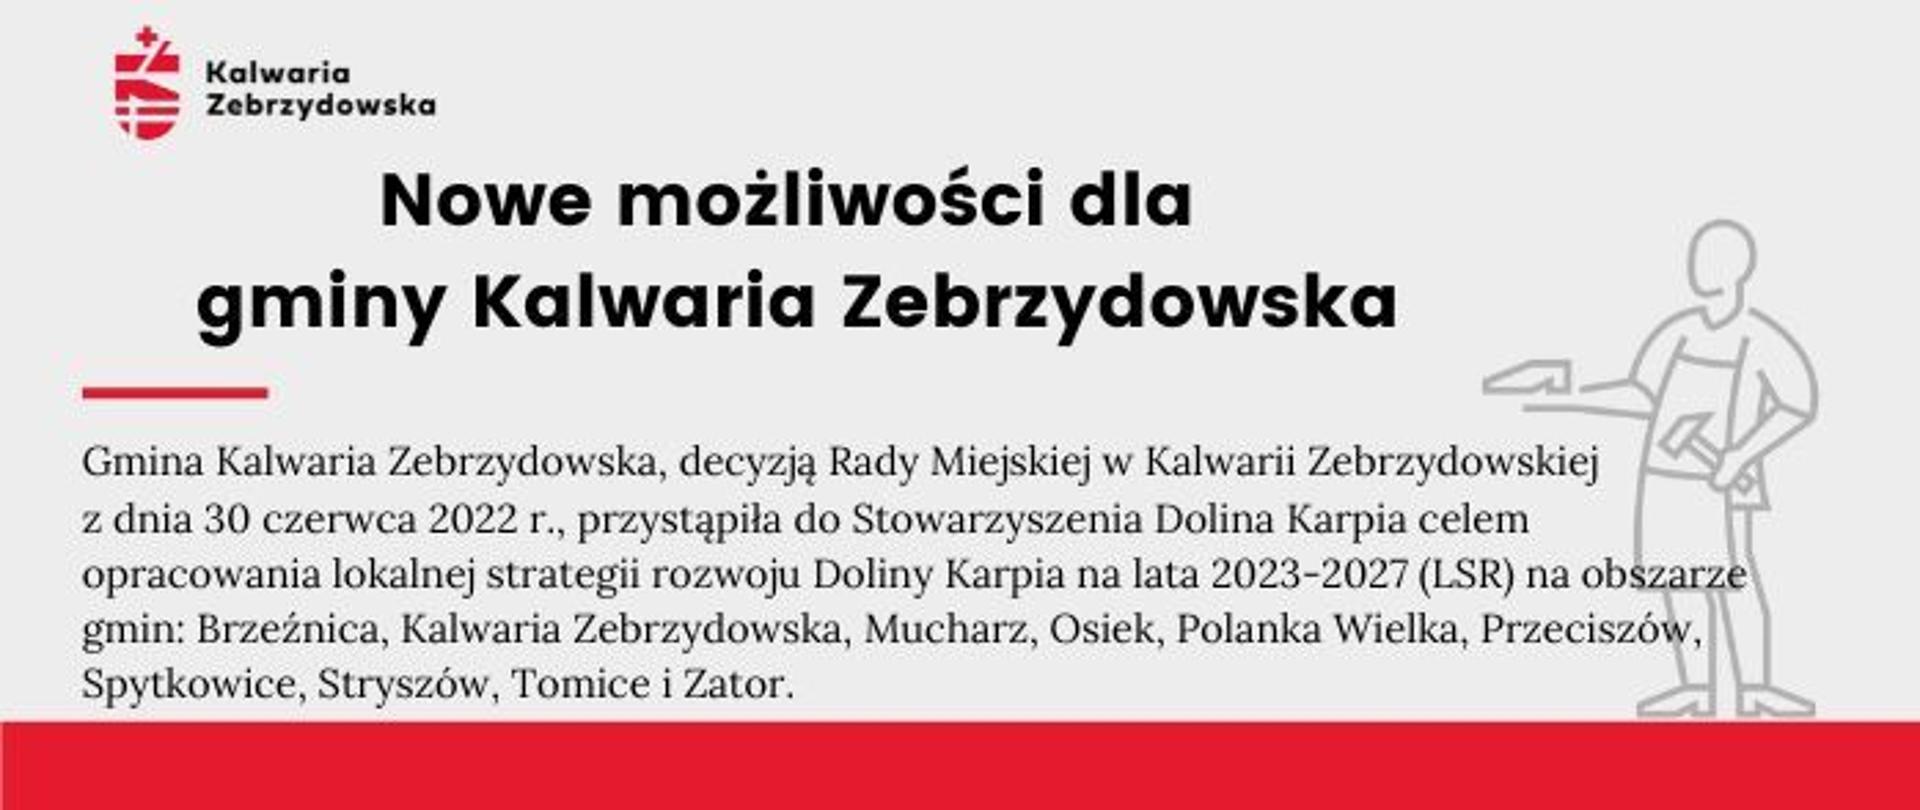 Plansza informacyjna - Nowe możliwości dla gminy Kalwaria Zebrzydowska